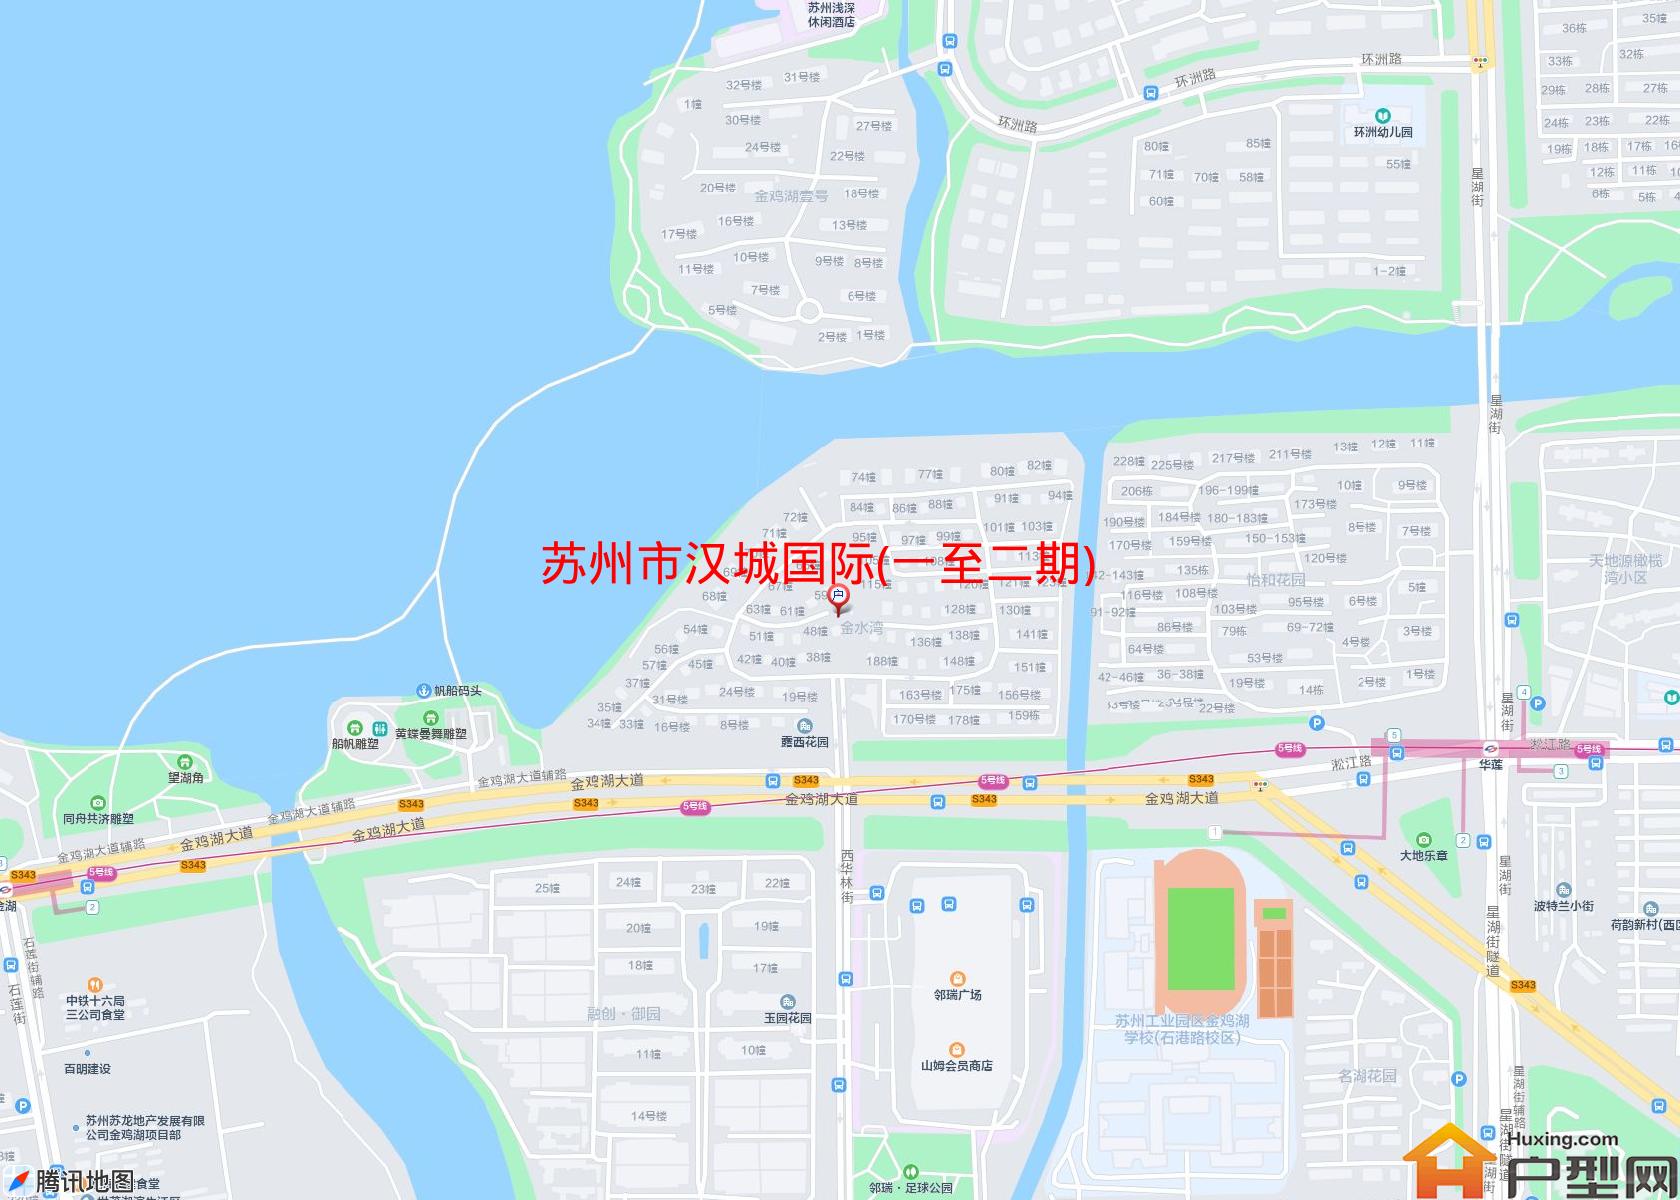 汉城国际(一至二期)小区 - 户型网